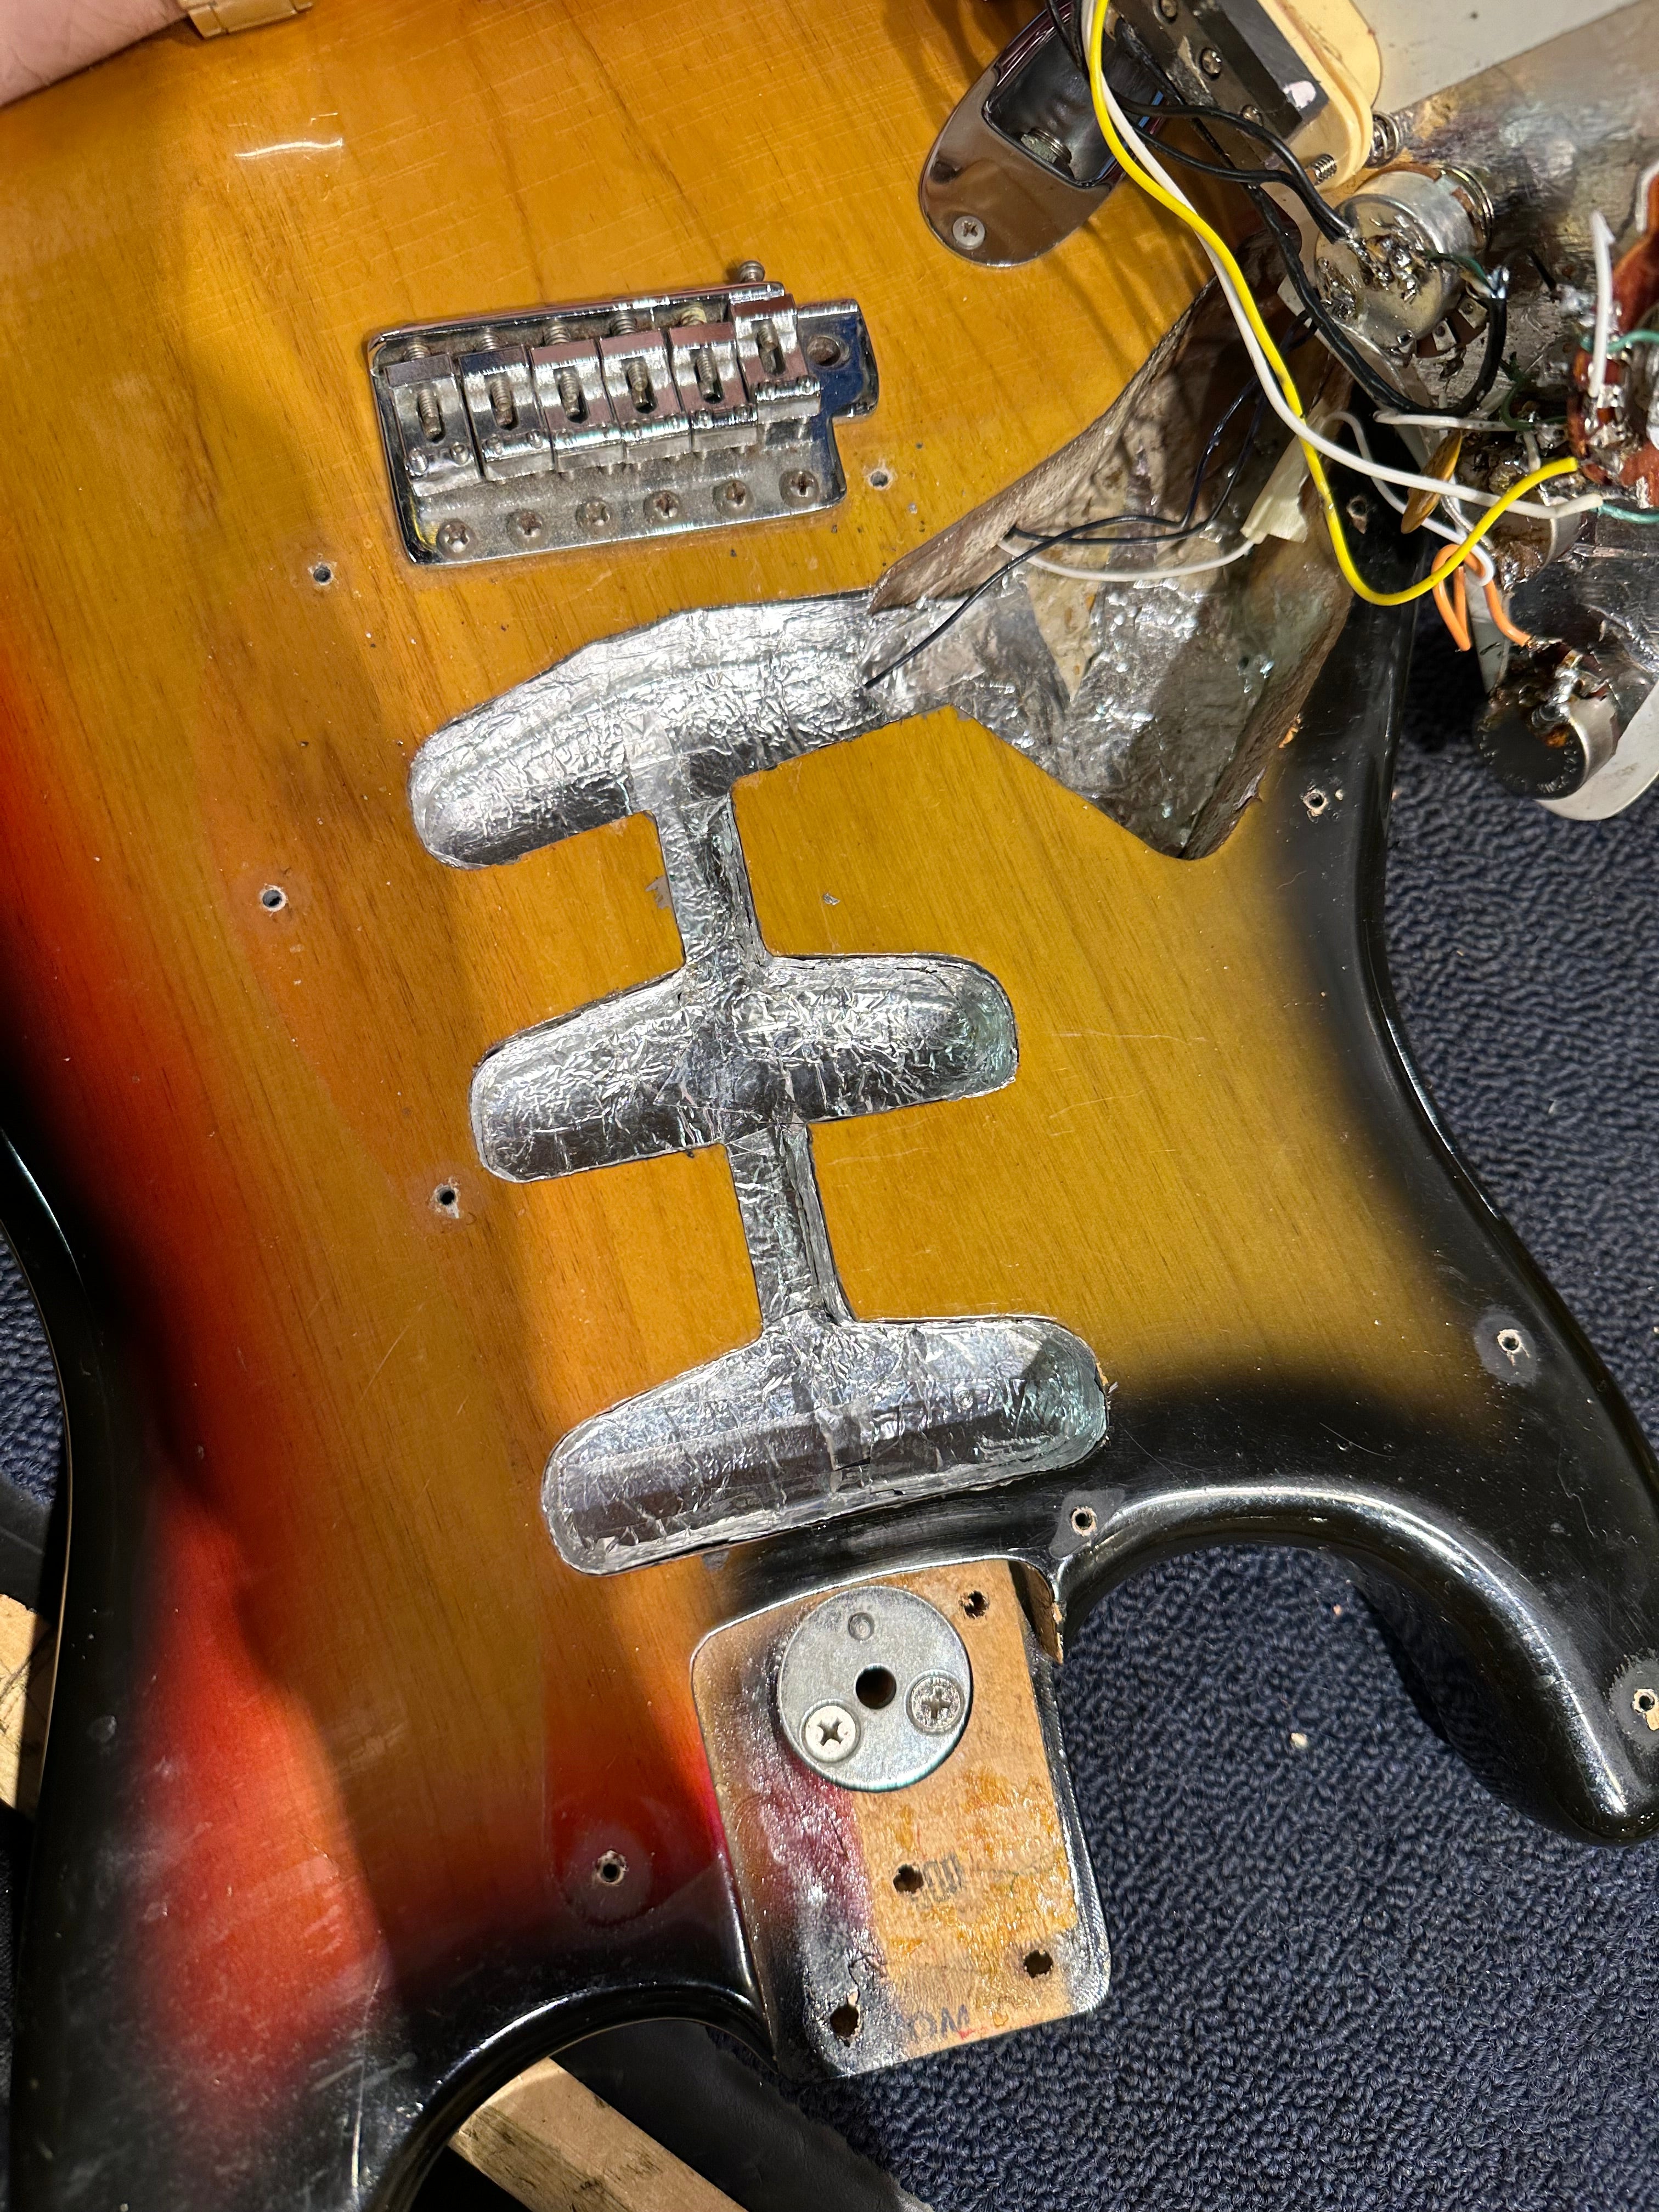 Fender Stratocaster Sunburst 1973 LEFTY